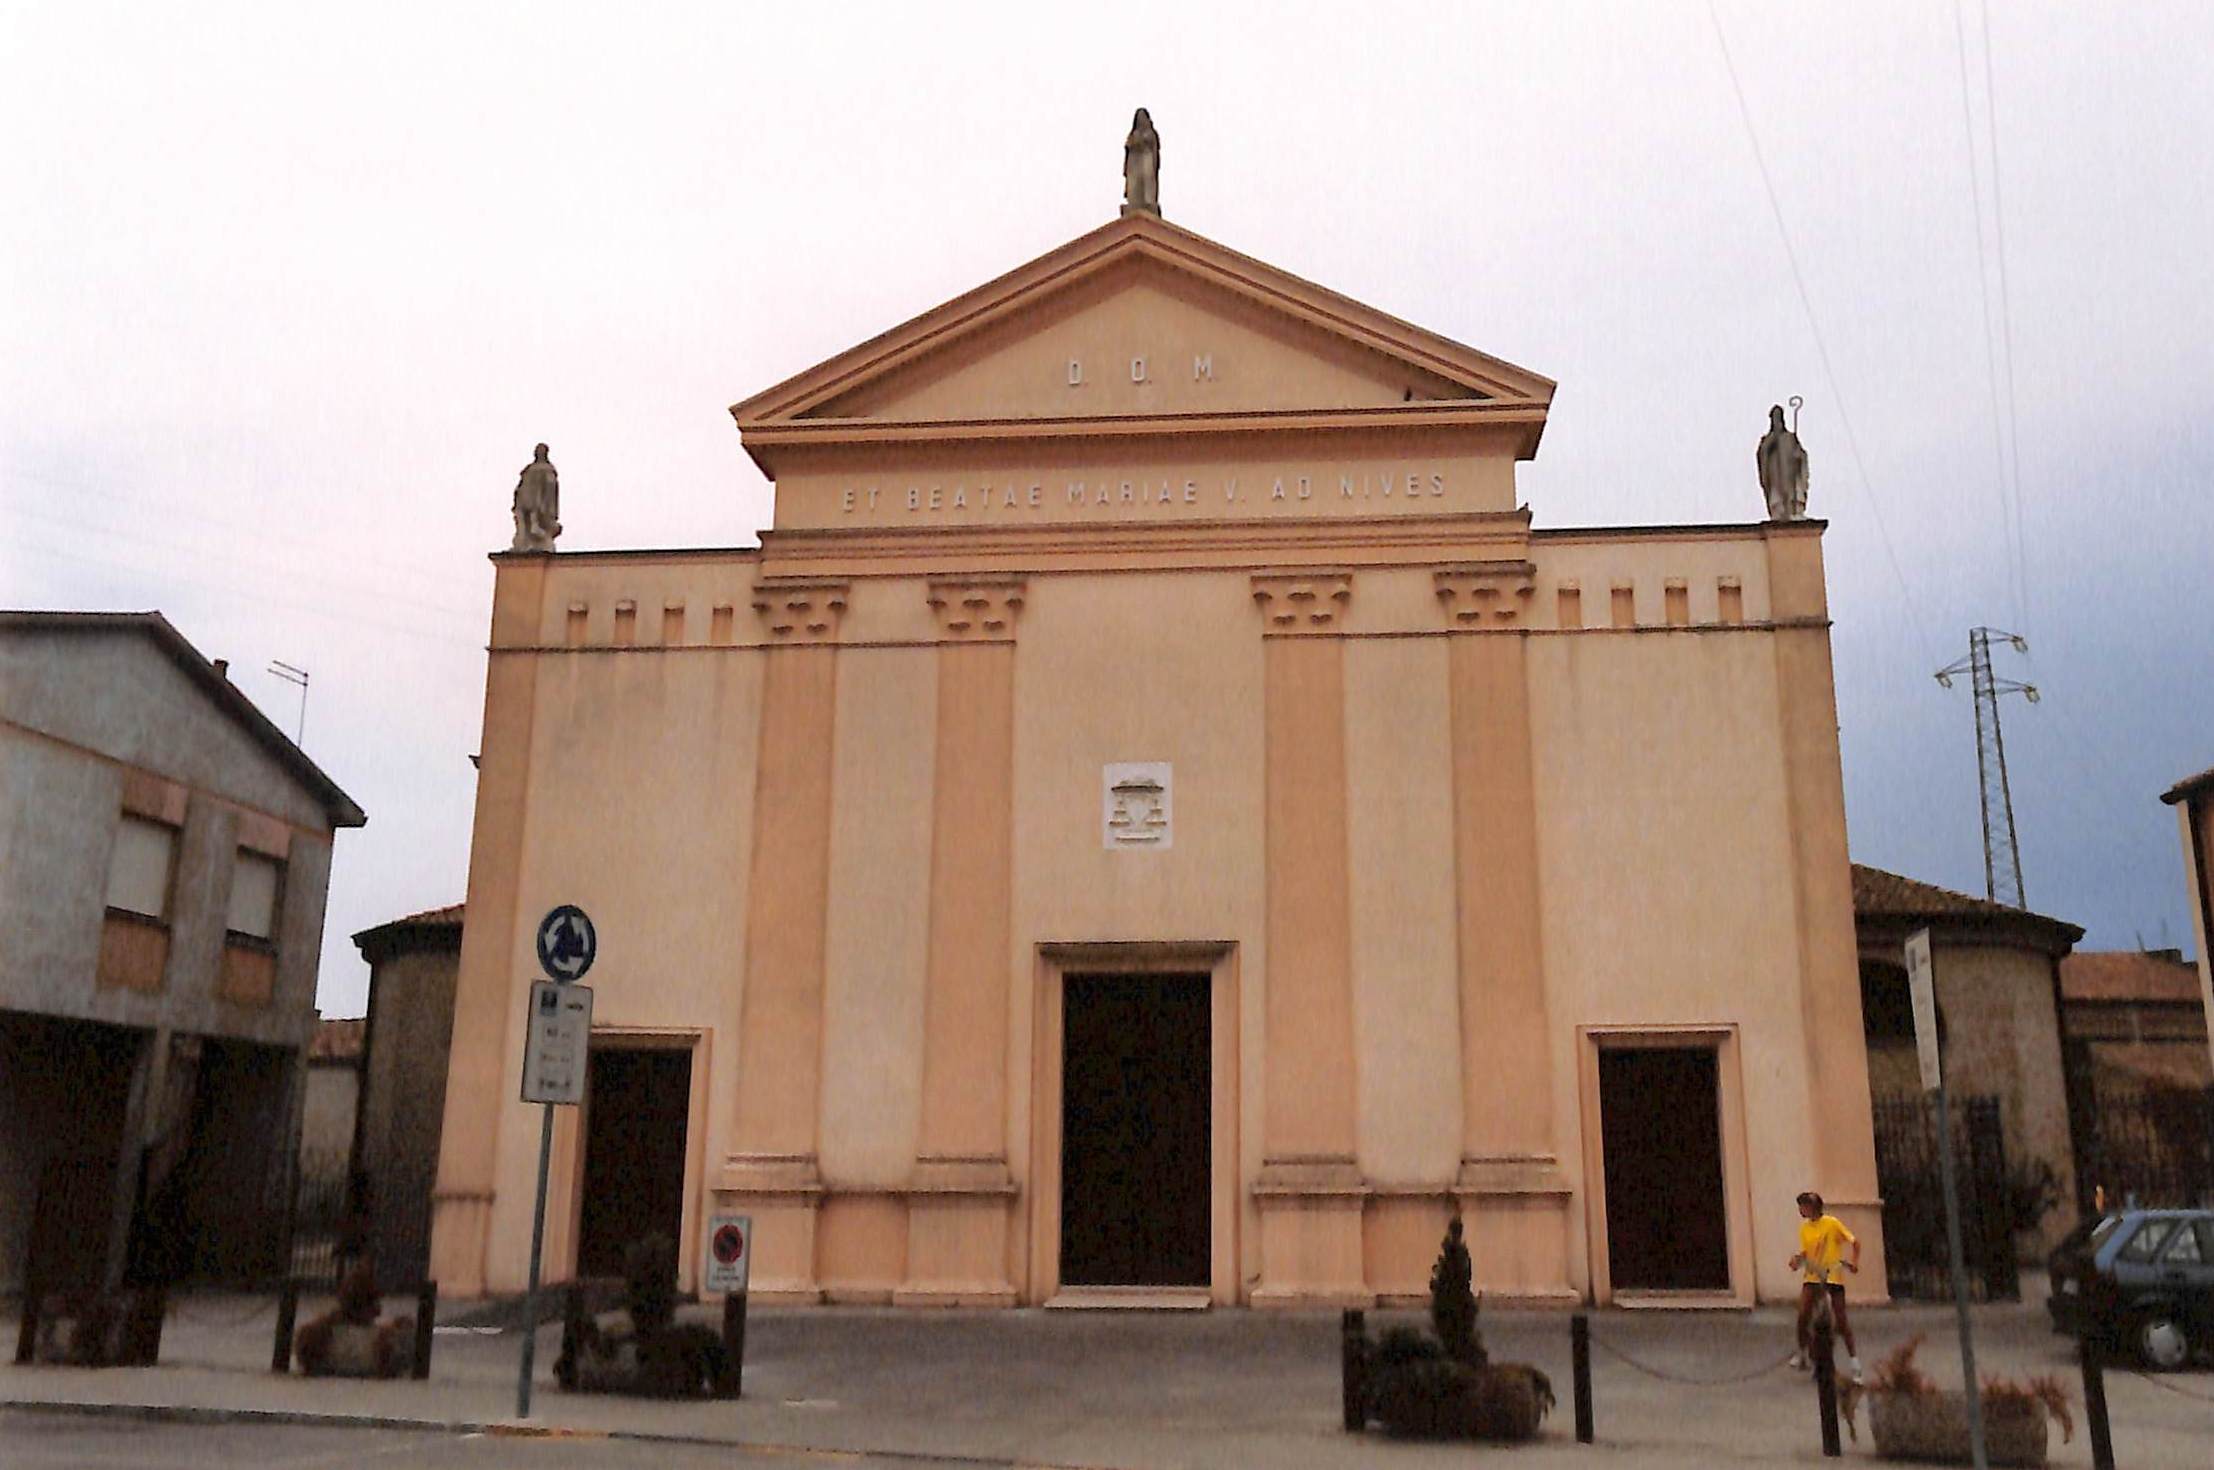 Chiesa di Santa Maria della Neve (chiesa/ campanile, parrocchiale) - Ariano nel Polesine (RO) 